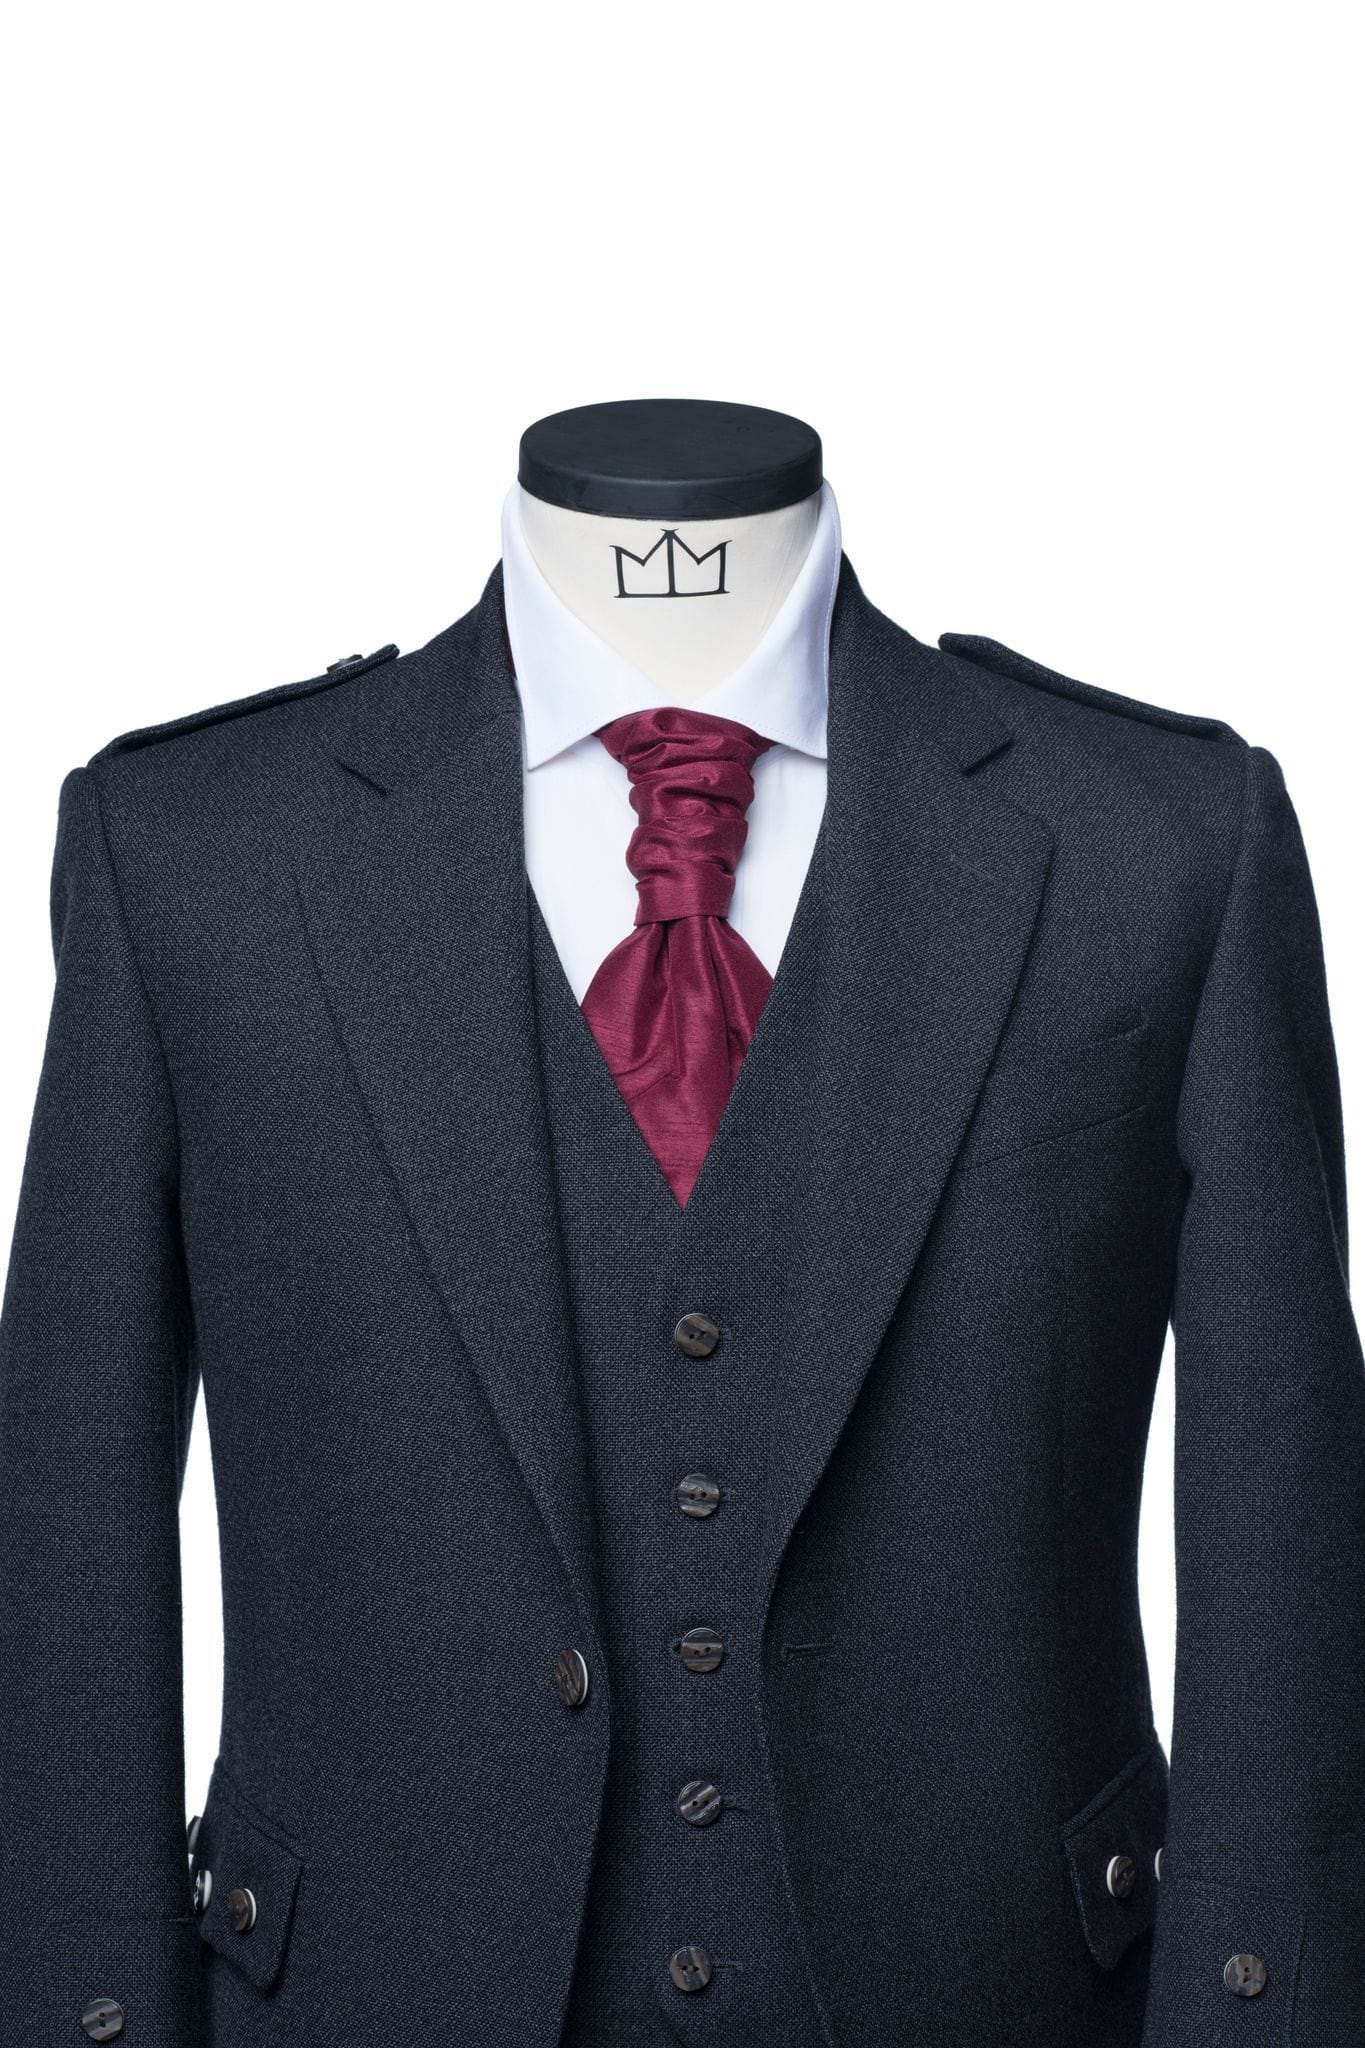 Oban Grey Tweed Kilt Outfit - MacGregor and MacDuff